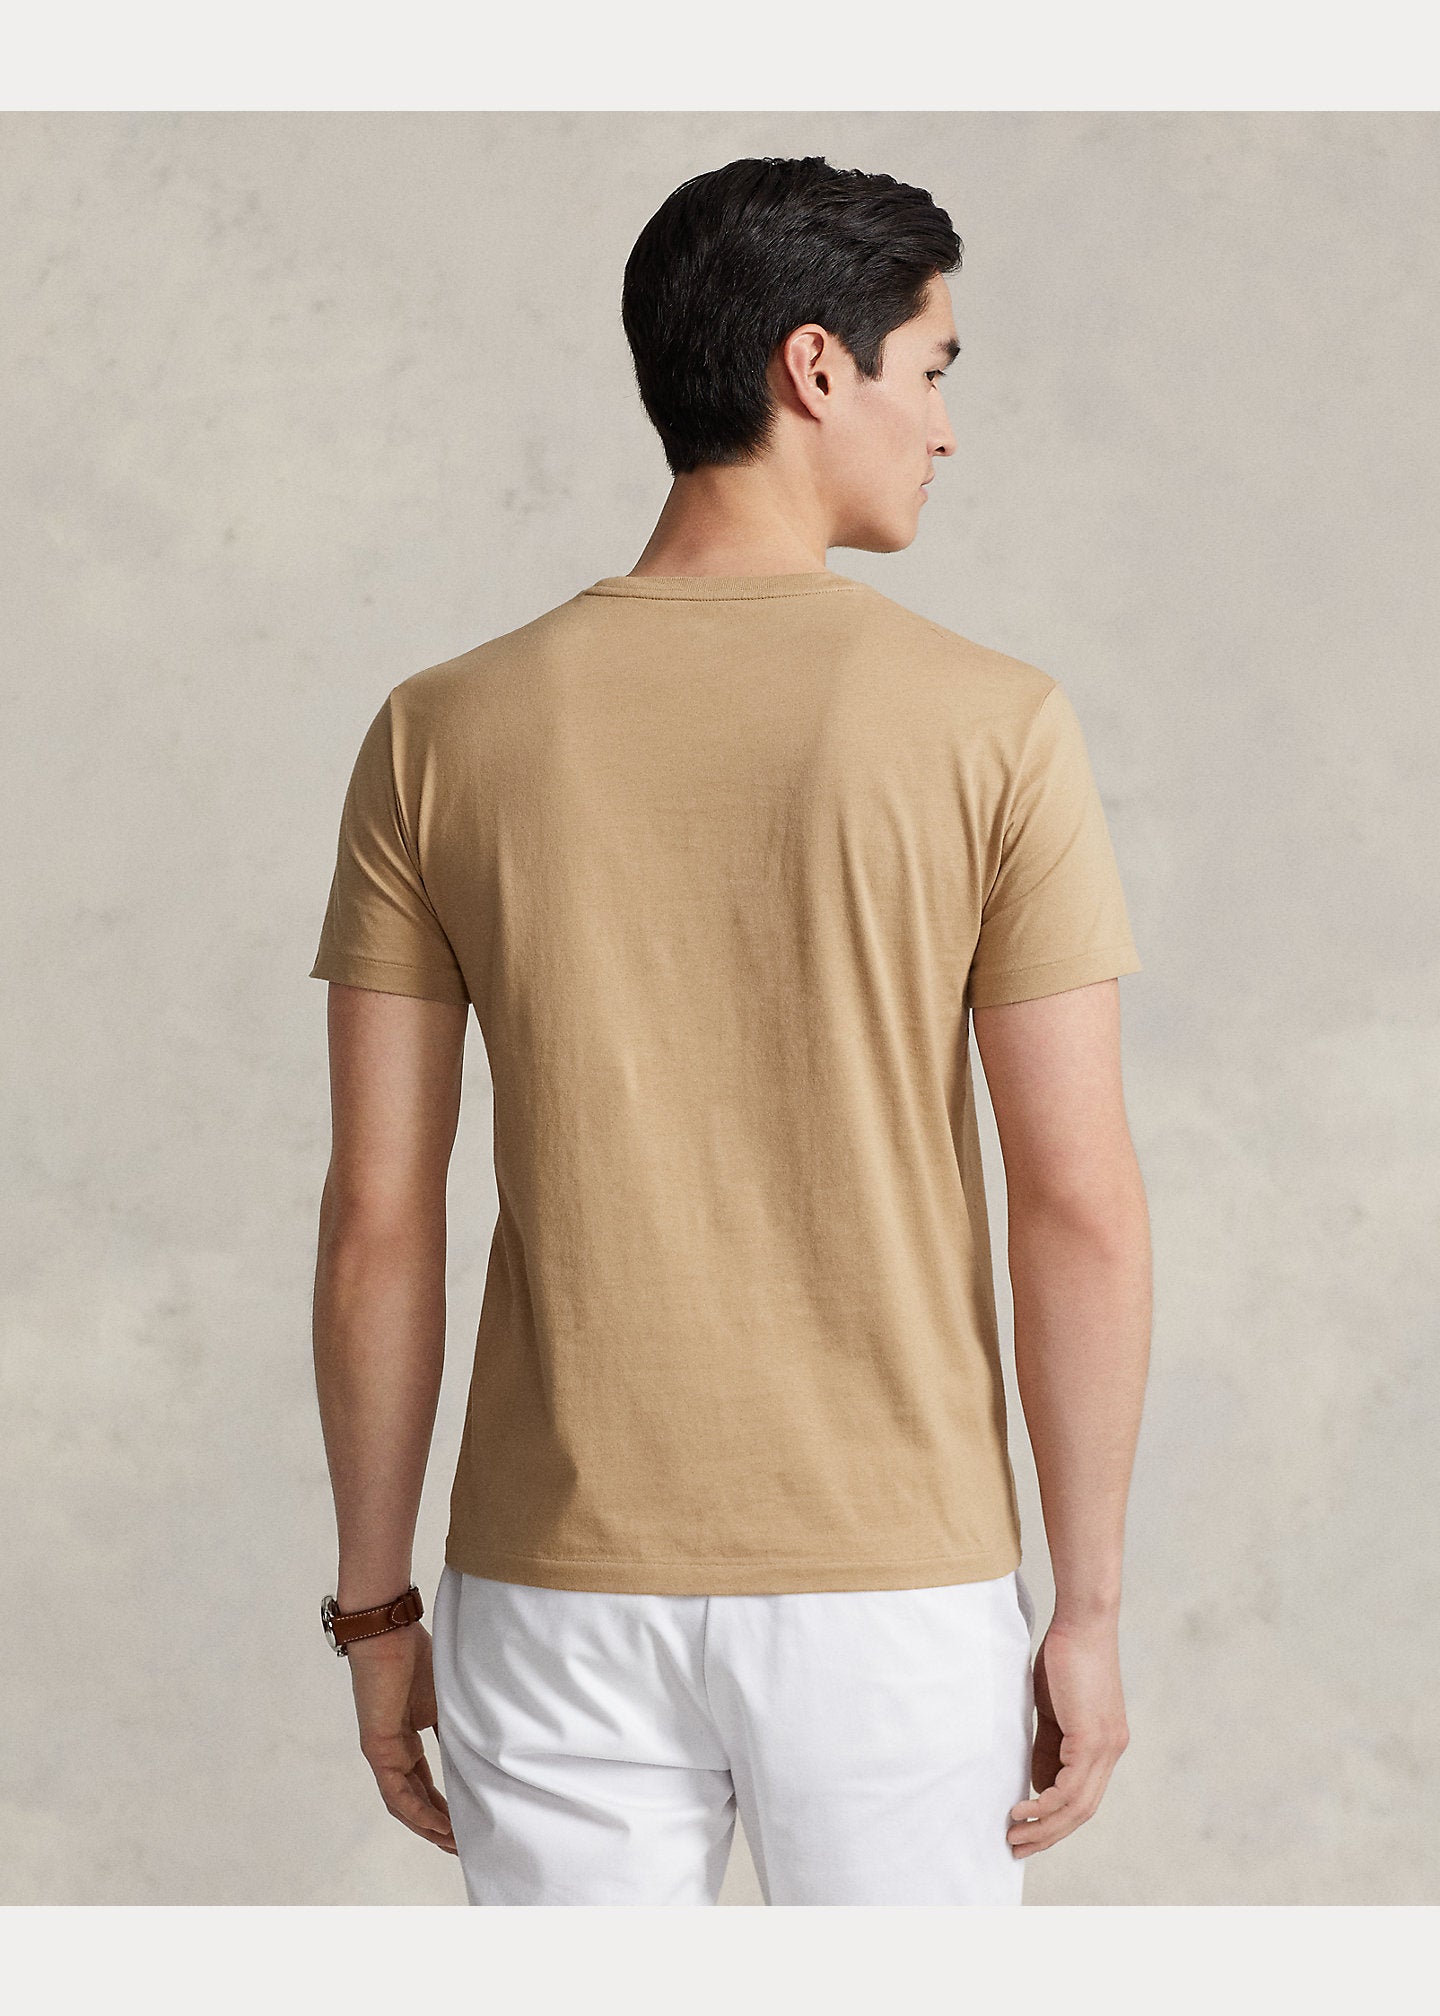 Polo Ralph Lauren SS T-Shirt 329 Cafe Tan